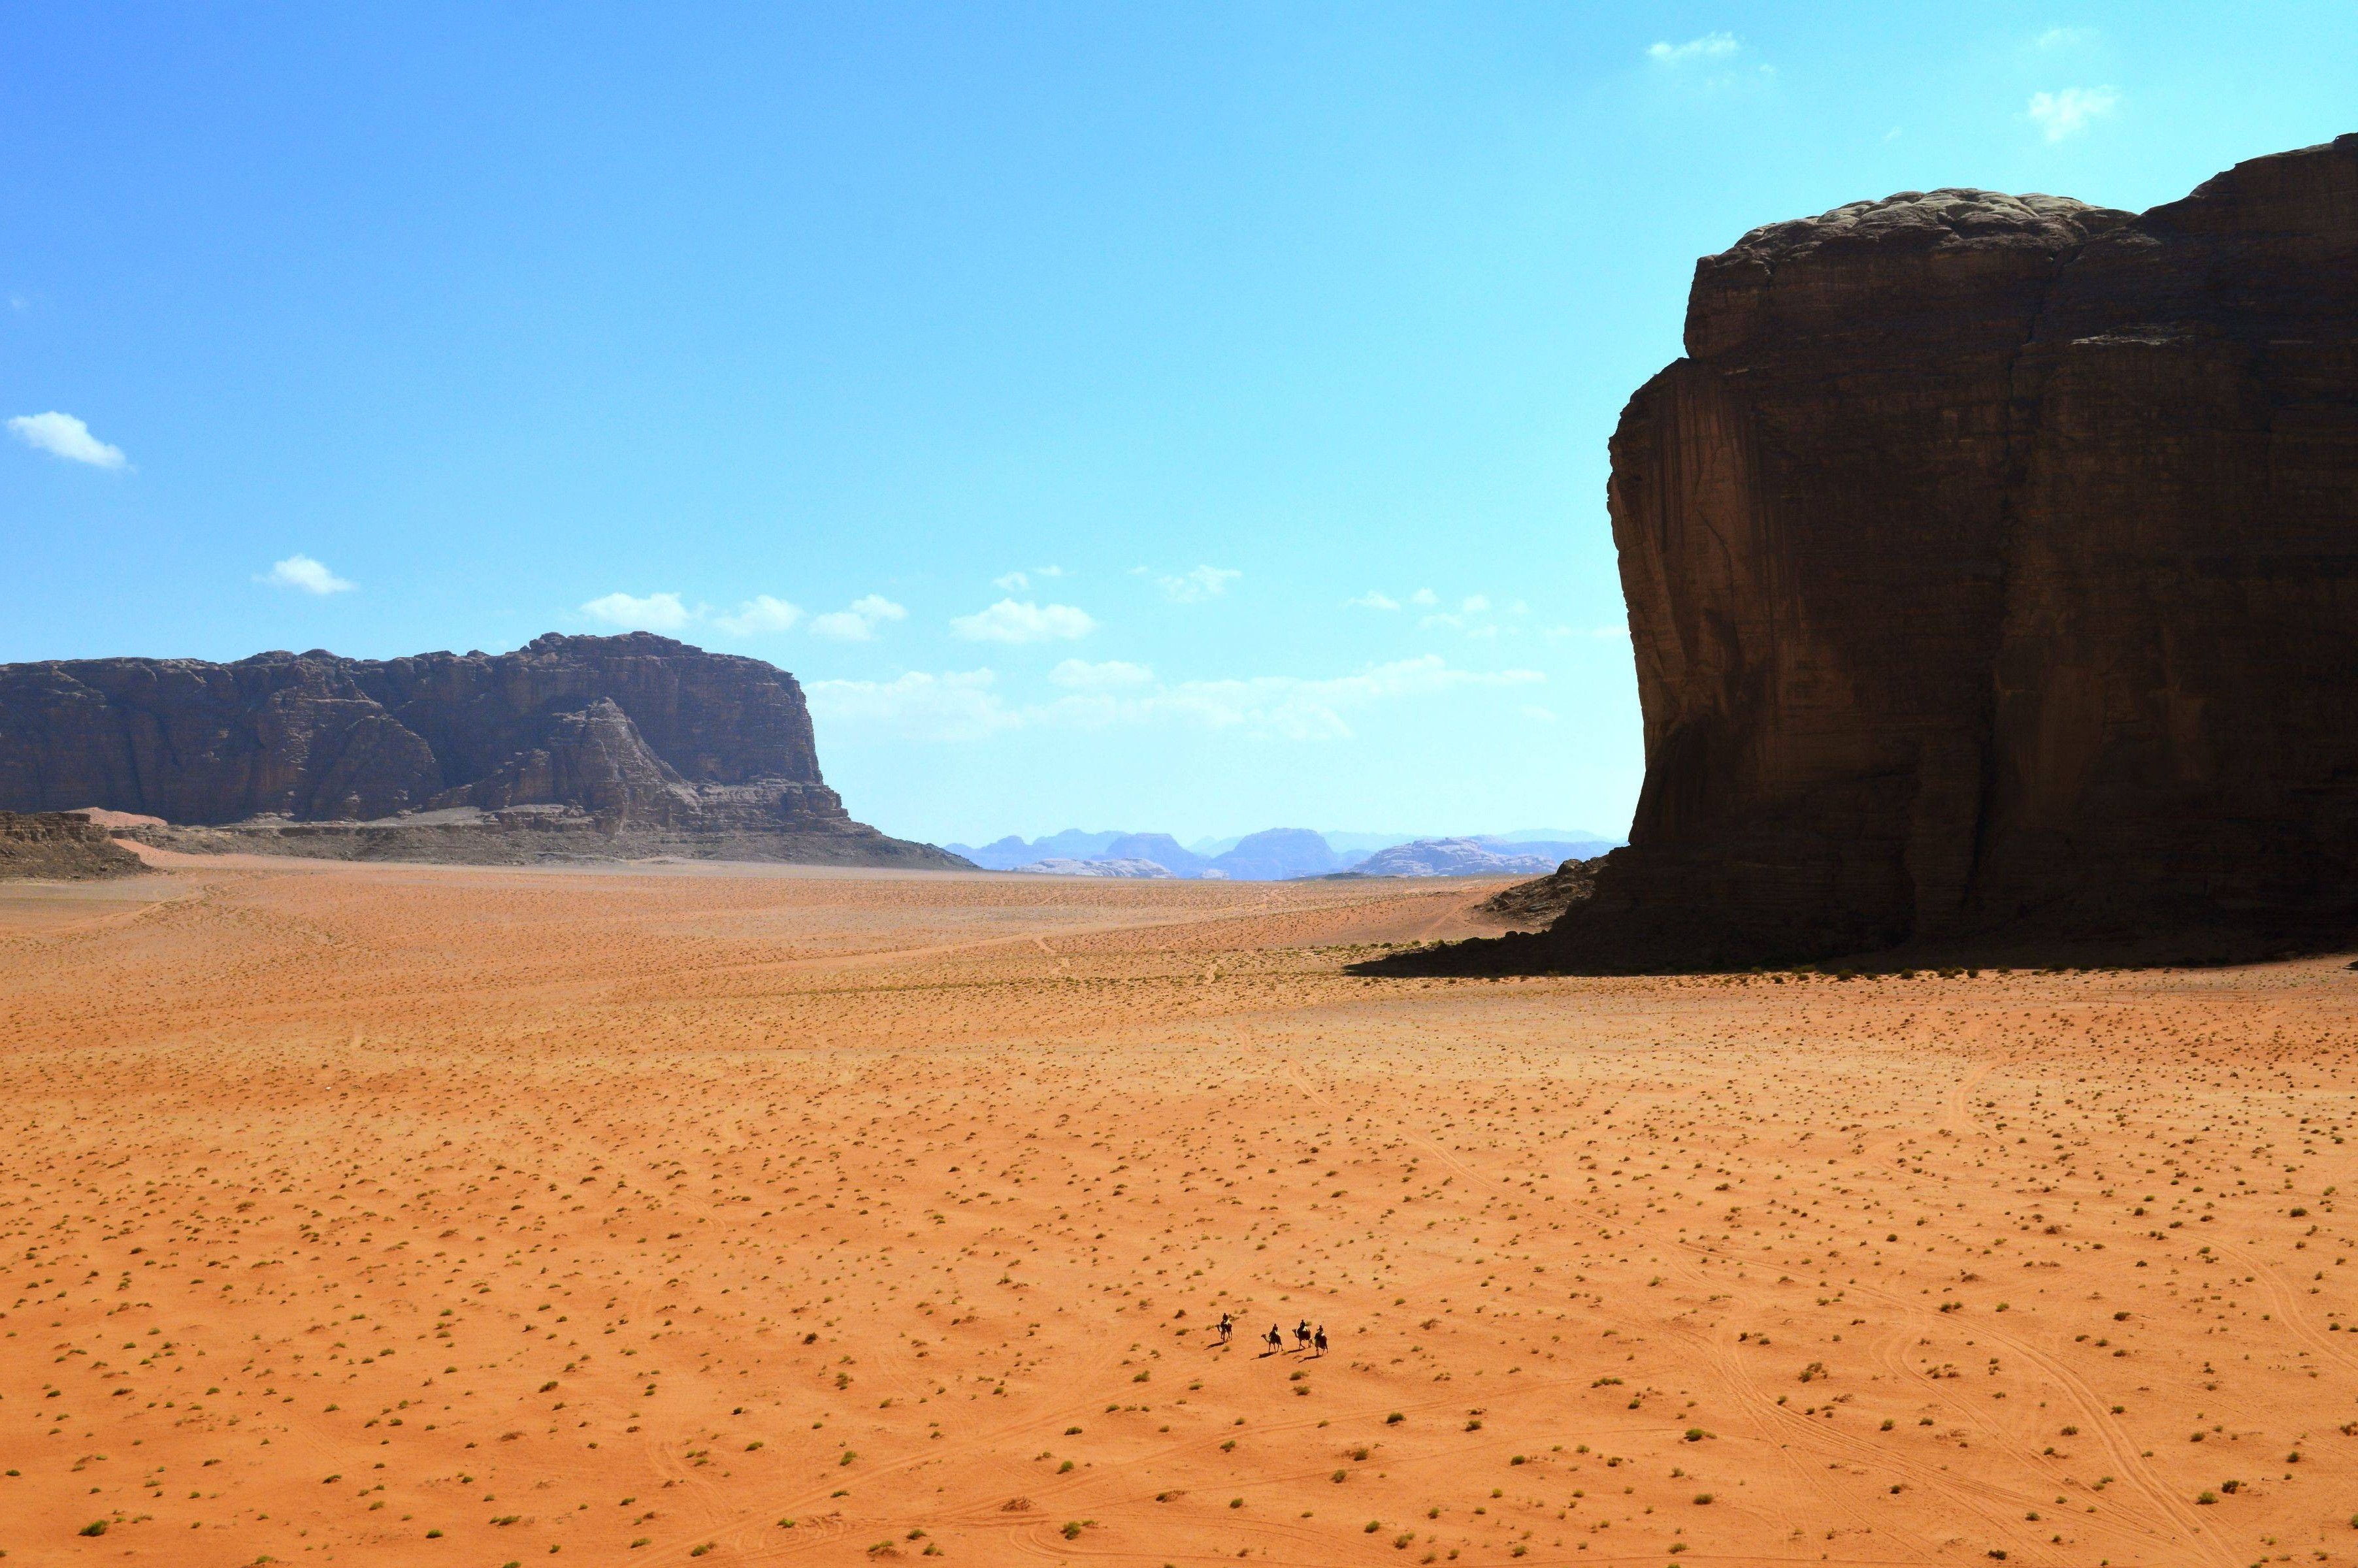 desert scenery